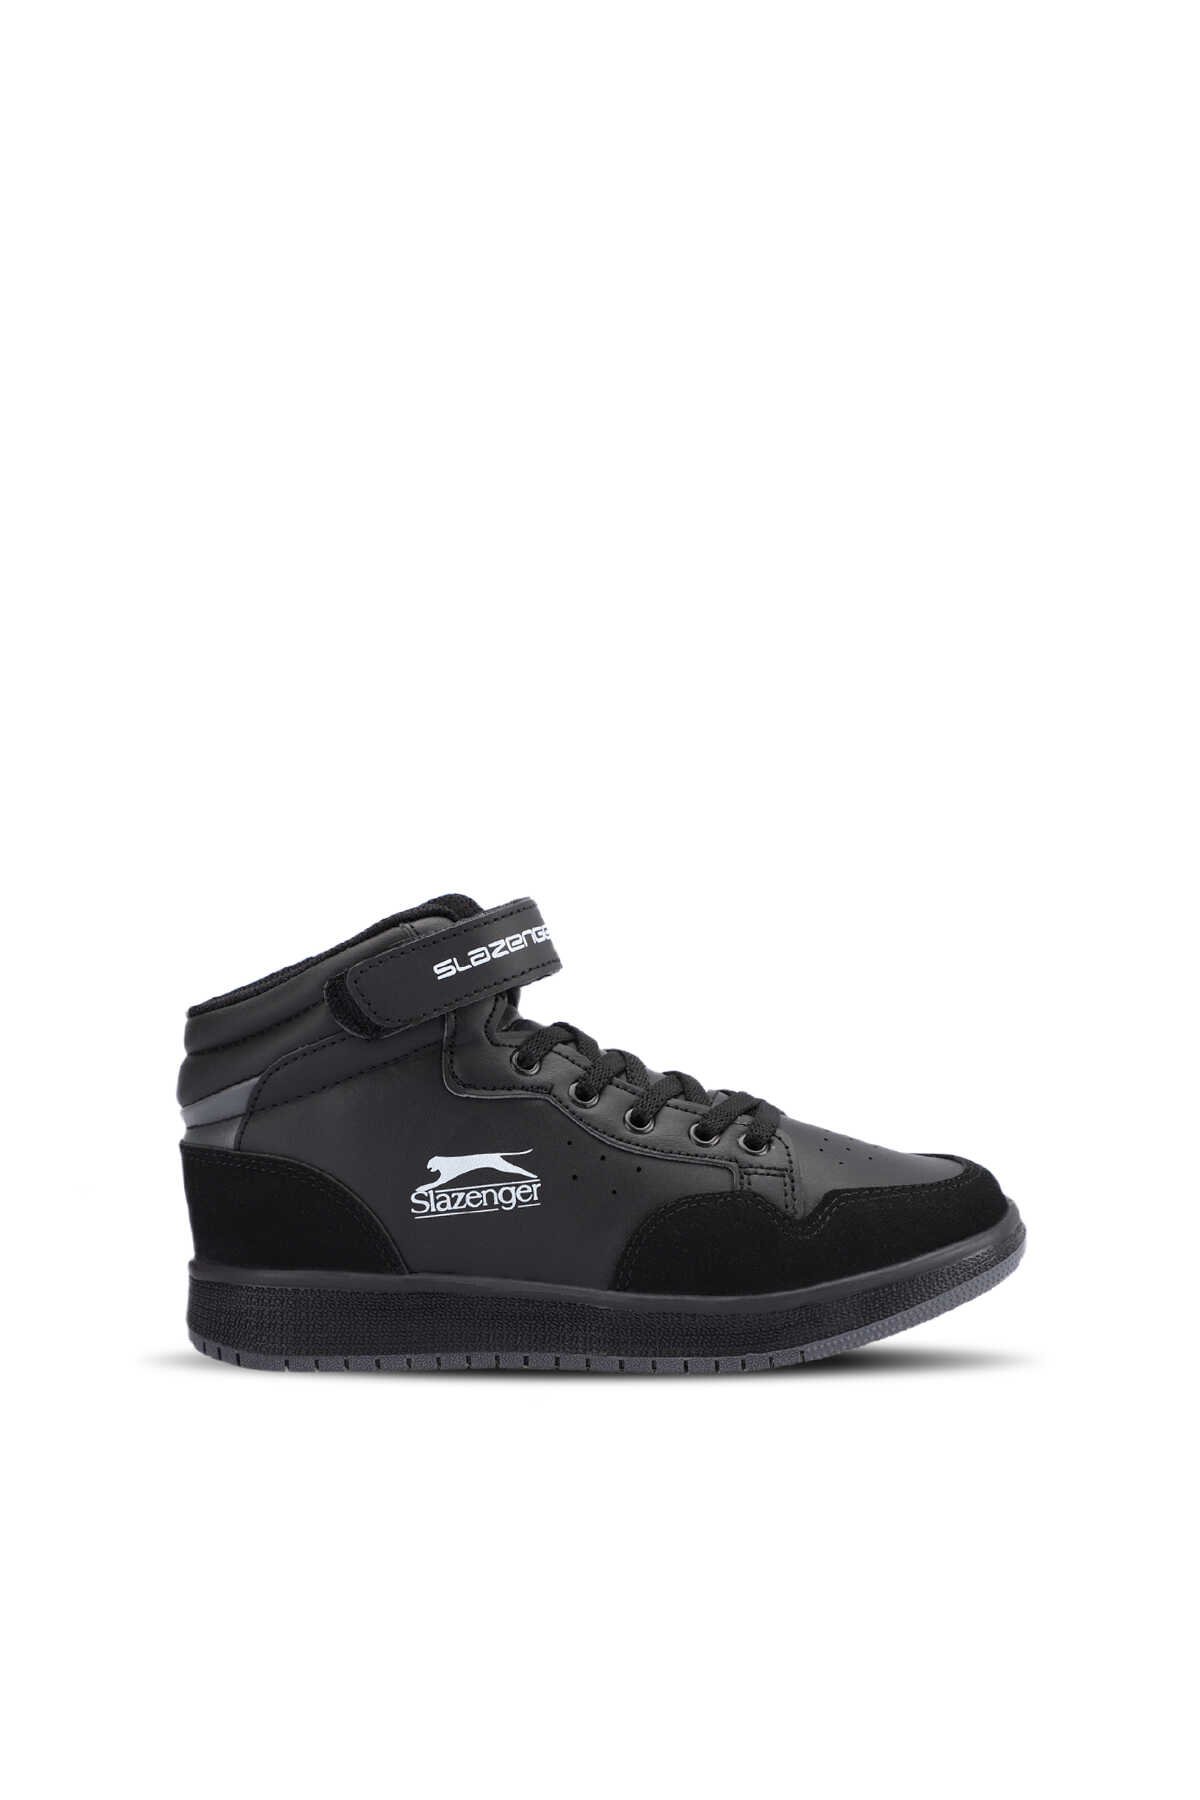 Slazenger - Slazenger PACE Sneaker Erkek Çocuk Ayakkabı Siyah / Siyah